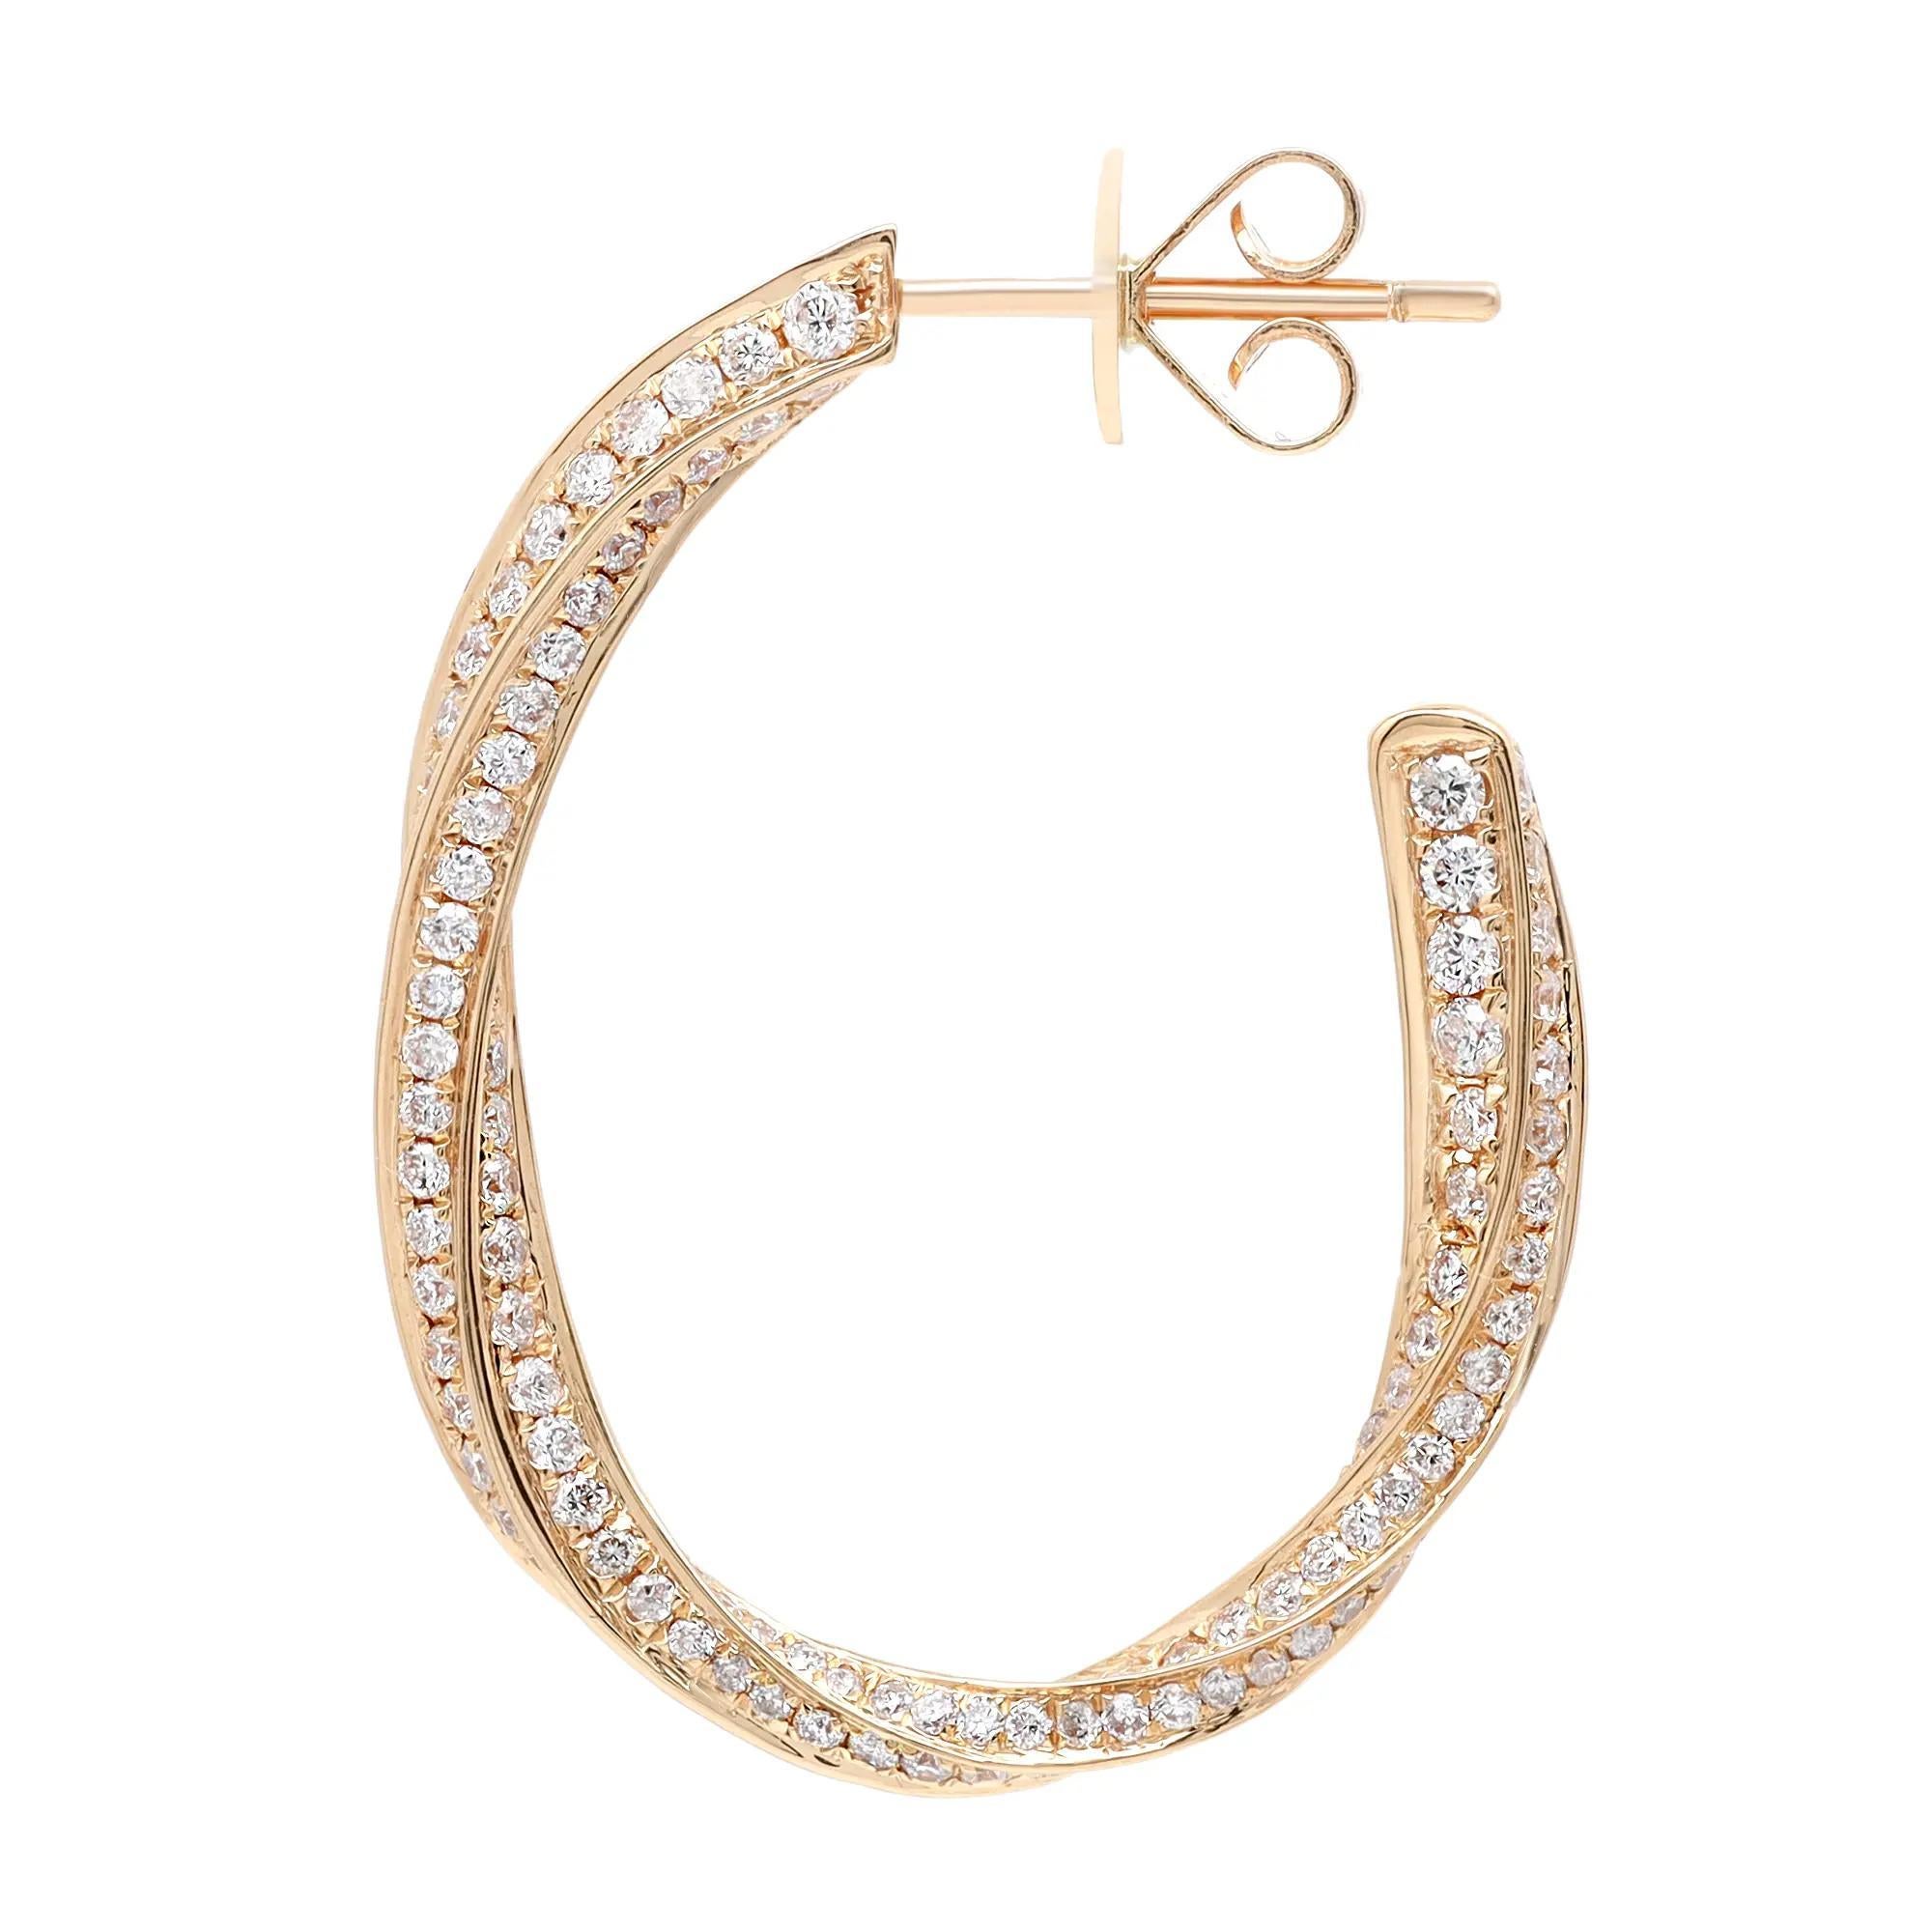 Zierliche und schillernde Diamant-Ohrringe, perfekt für einen auffälligen Look. Diese Ohrringe sind aus feinem, hochglanzpoliertem 18-karätigem Gelbgold gefertigt und mit strahlend weißen, runden Diamanten von 2,04 Karat besetzt. Qualität des